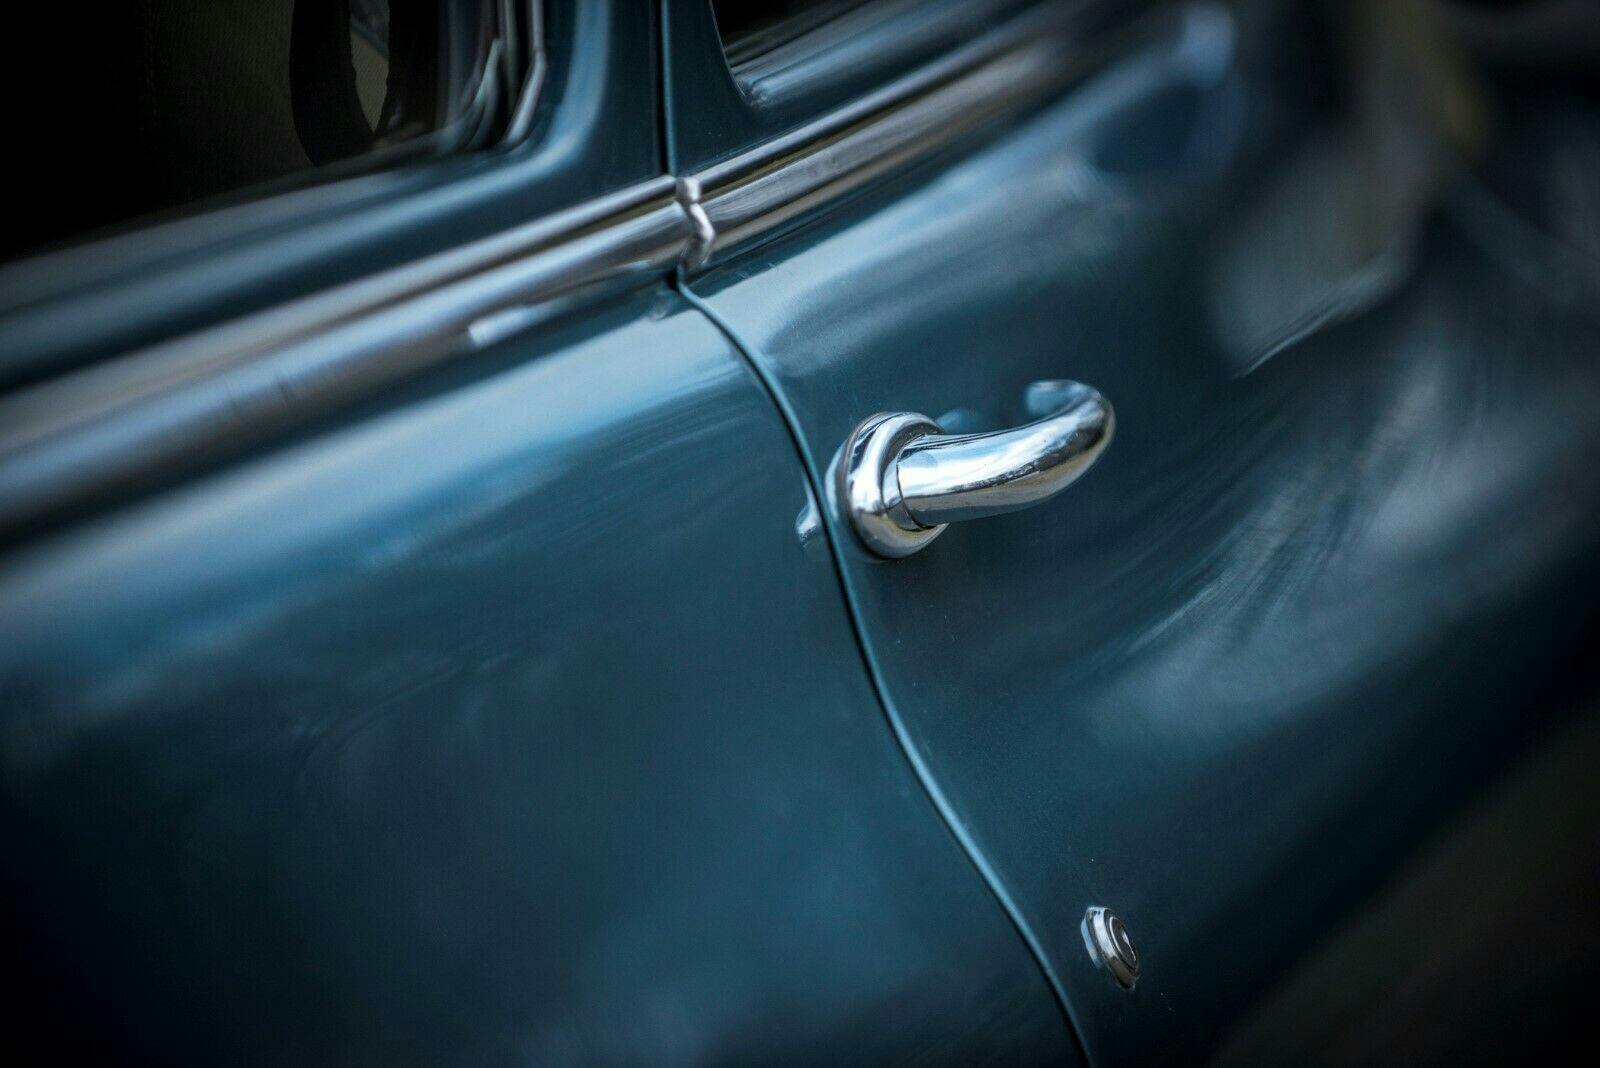 1949 Packard Deluxe Club Sedan - Close-up door handle